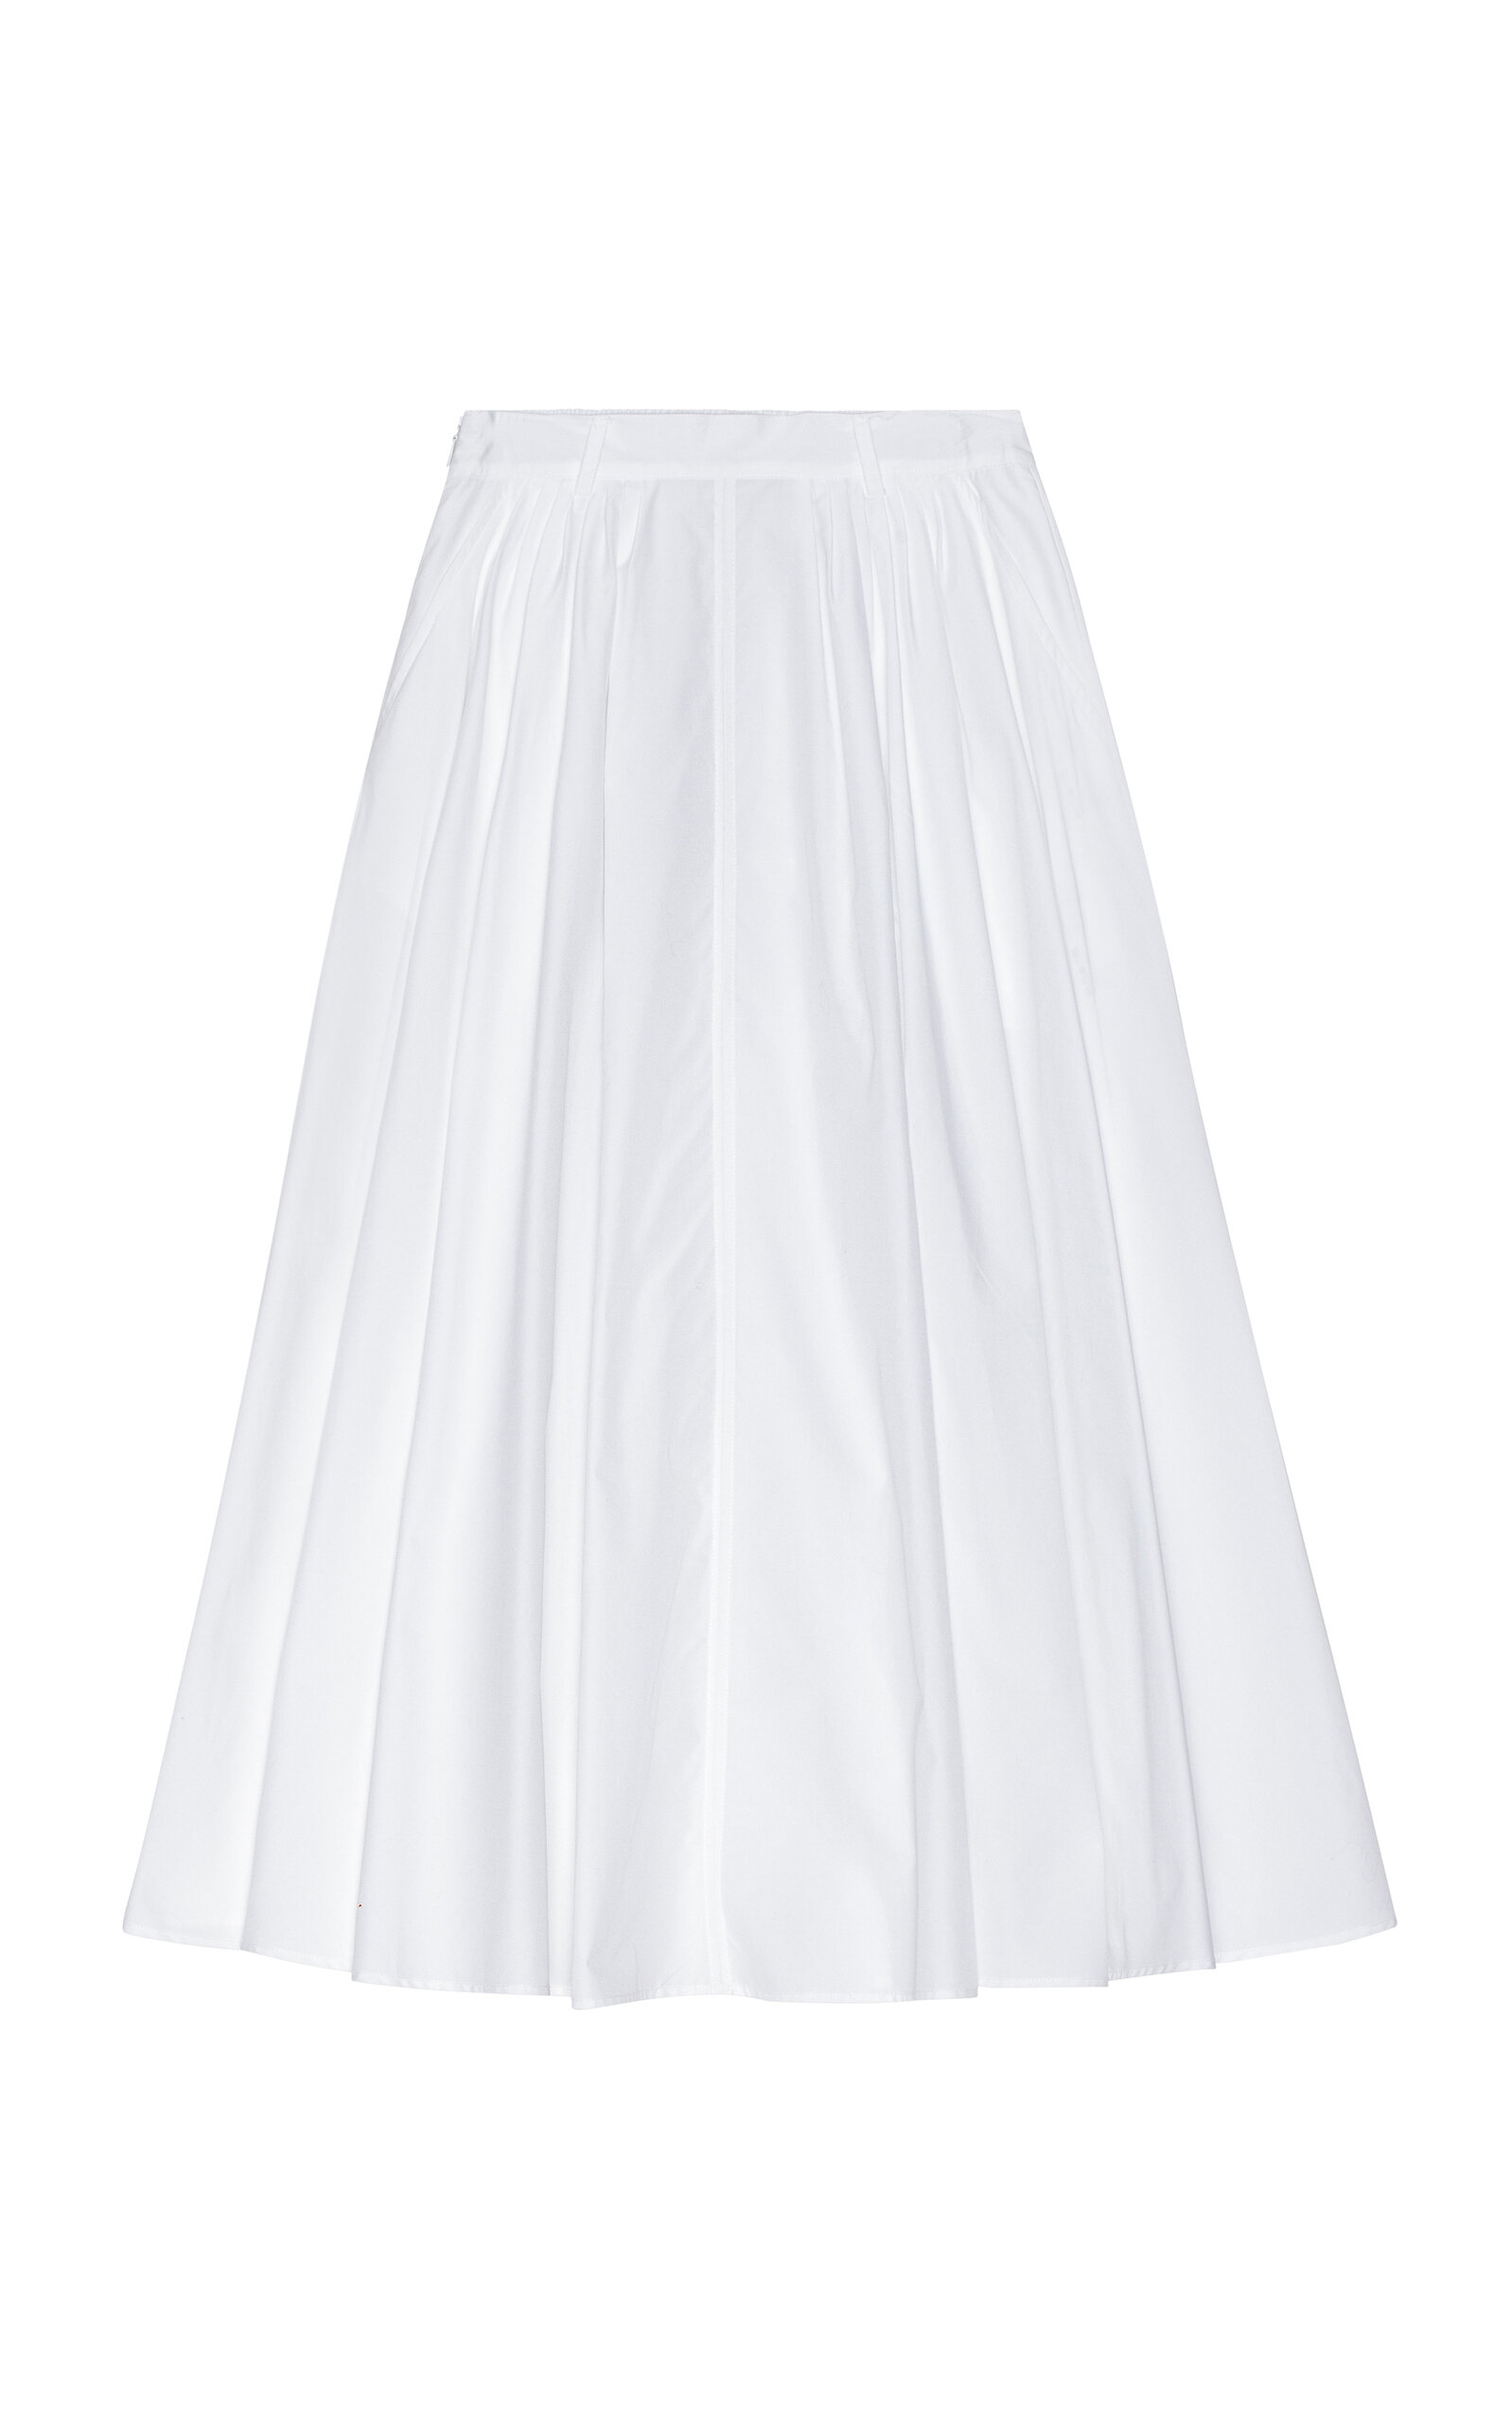 Mark Kenly Domino Tan Novo Cotton Poplin Skirt In White